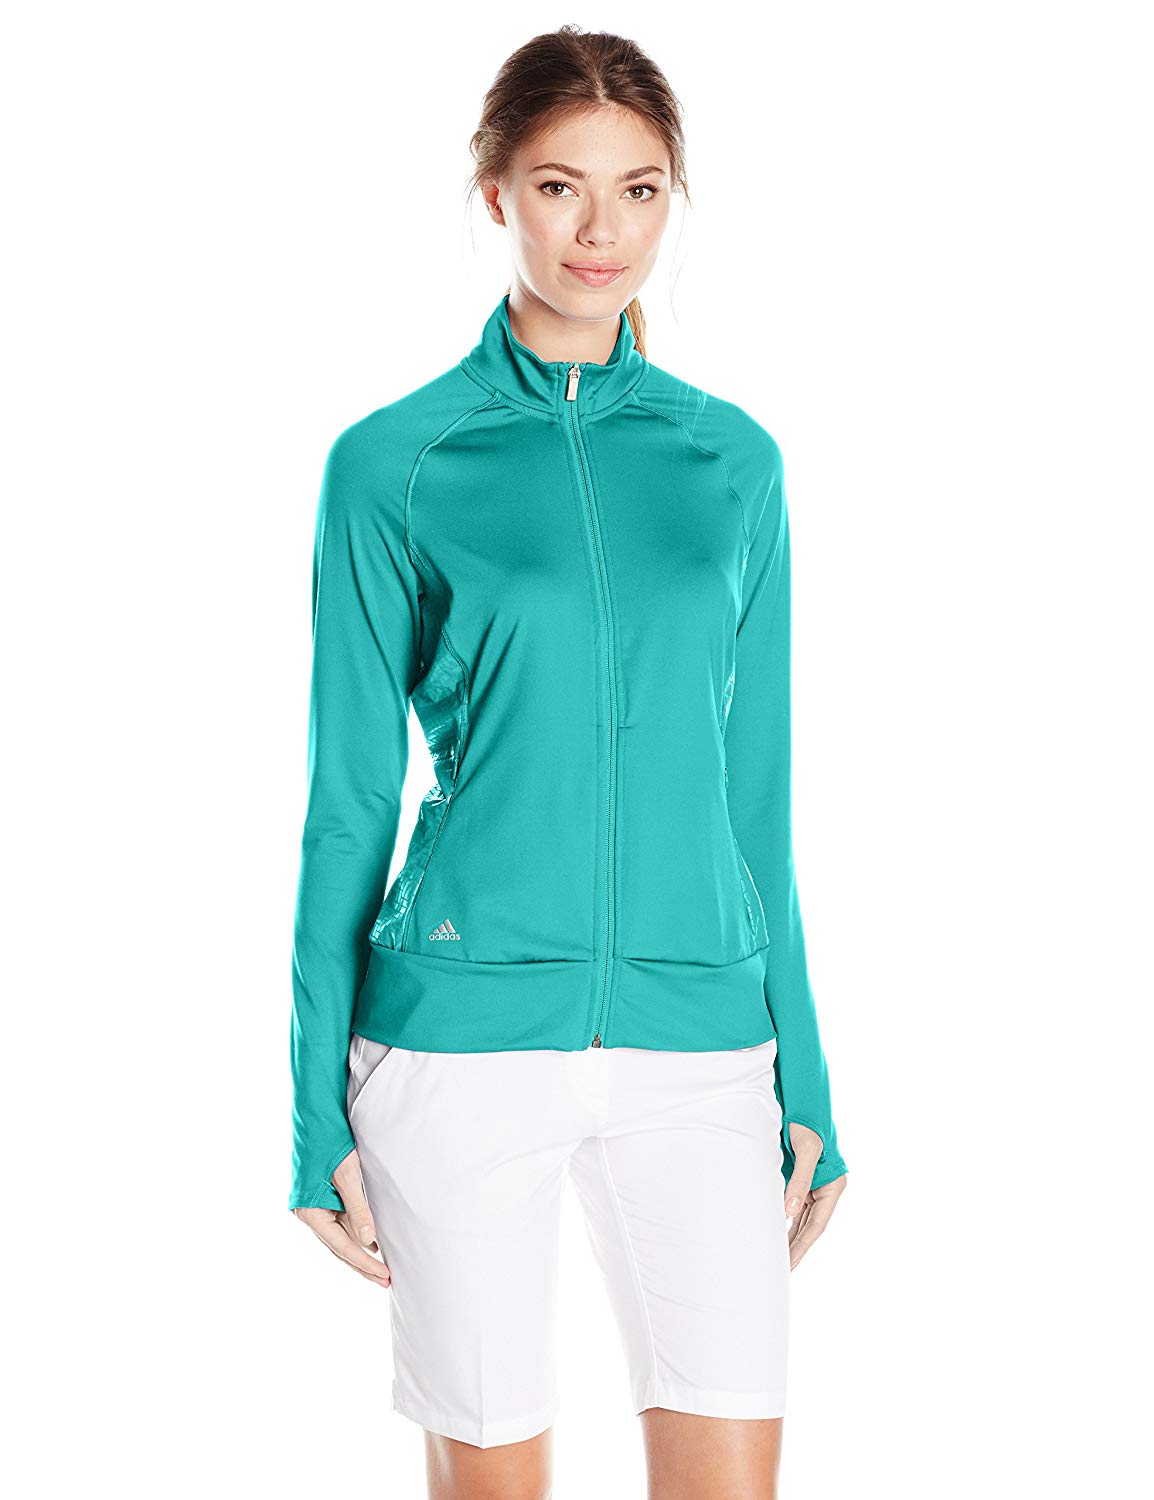 Adidas Womens Ranger Full Zip Golf Jackets